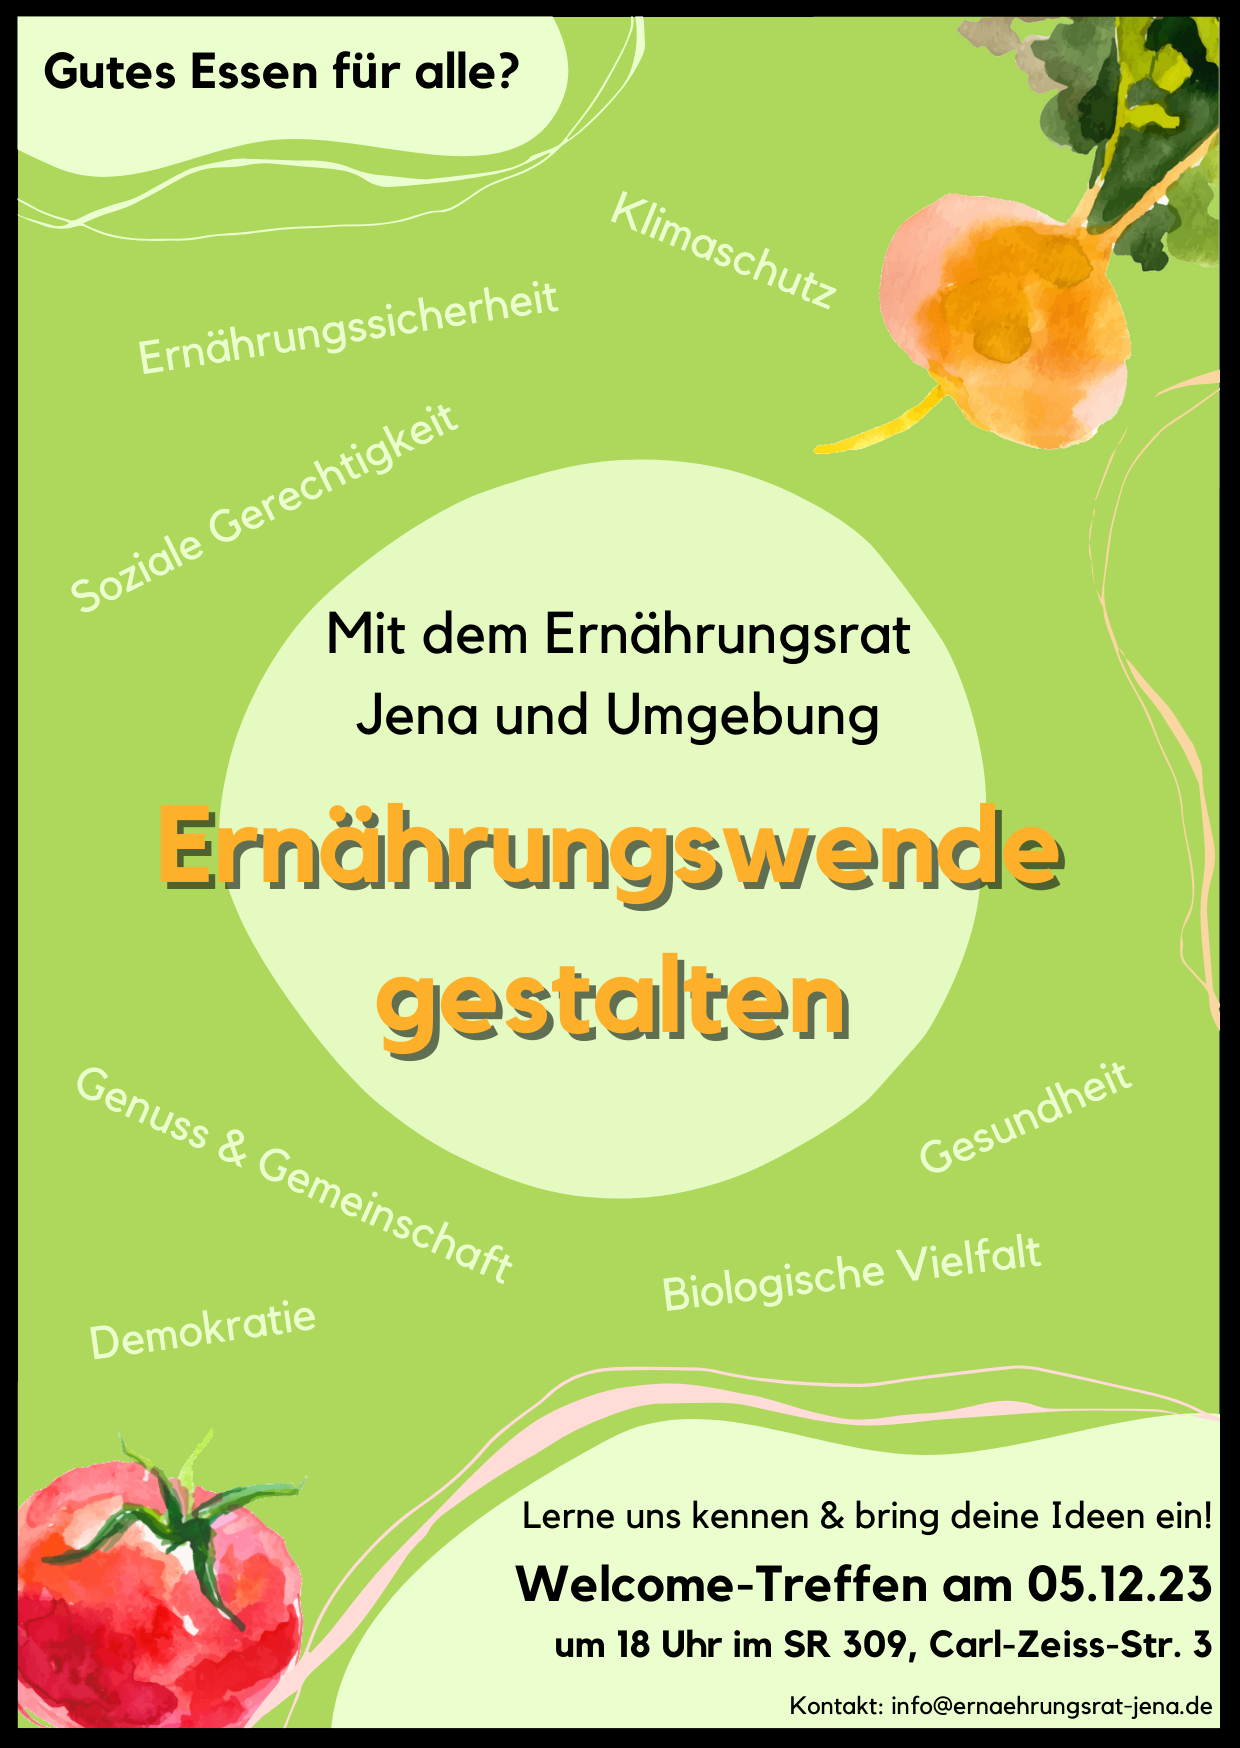 Welcome-Treffen Ernährungsrat Jena und Umgebung